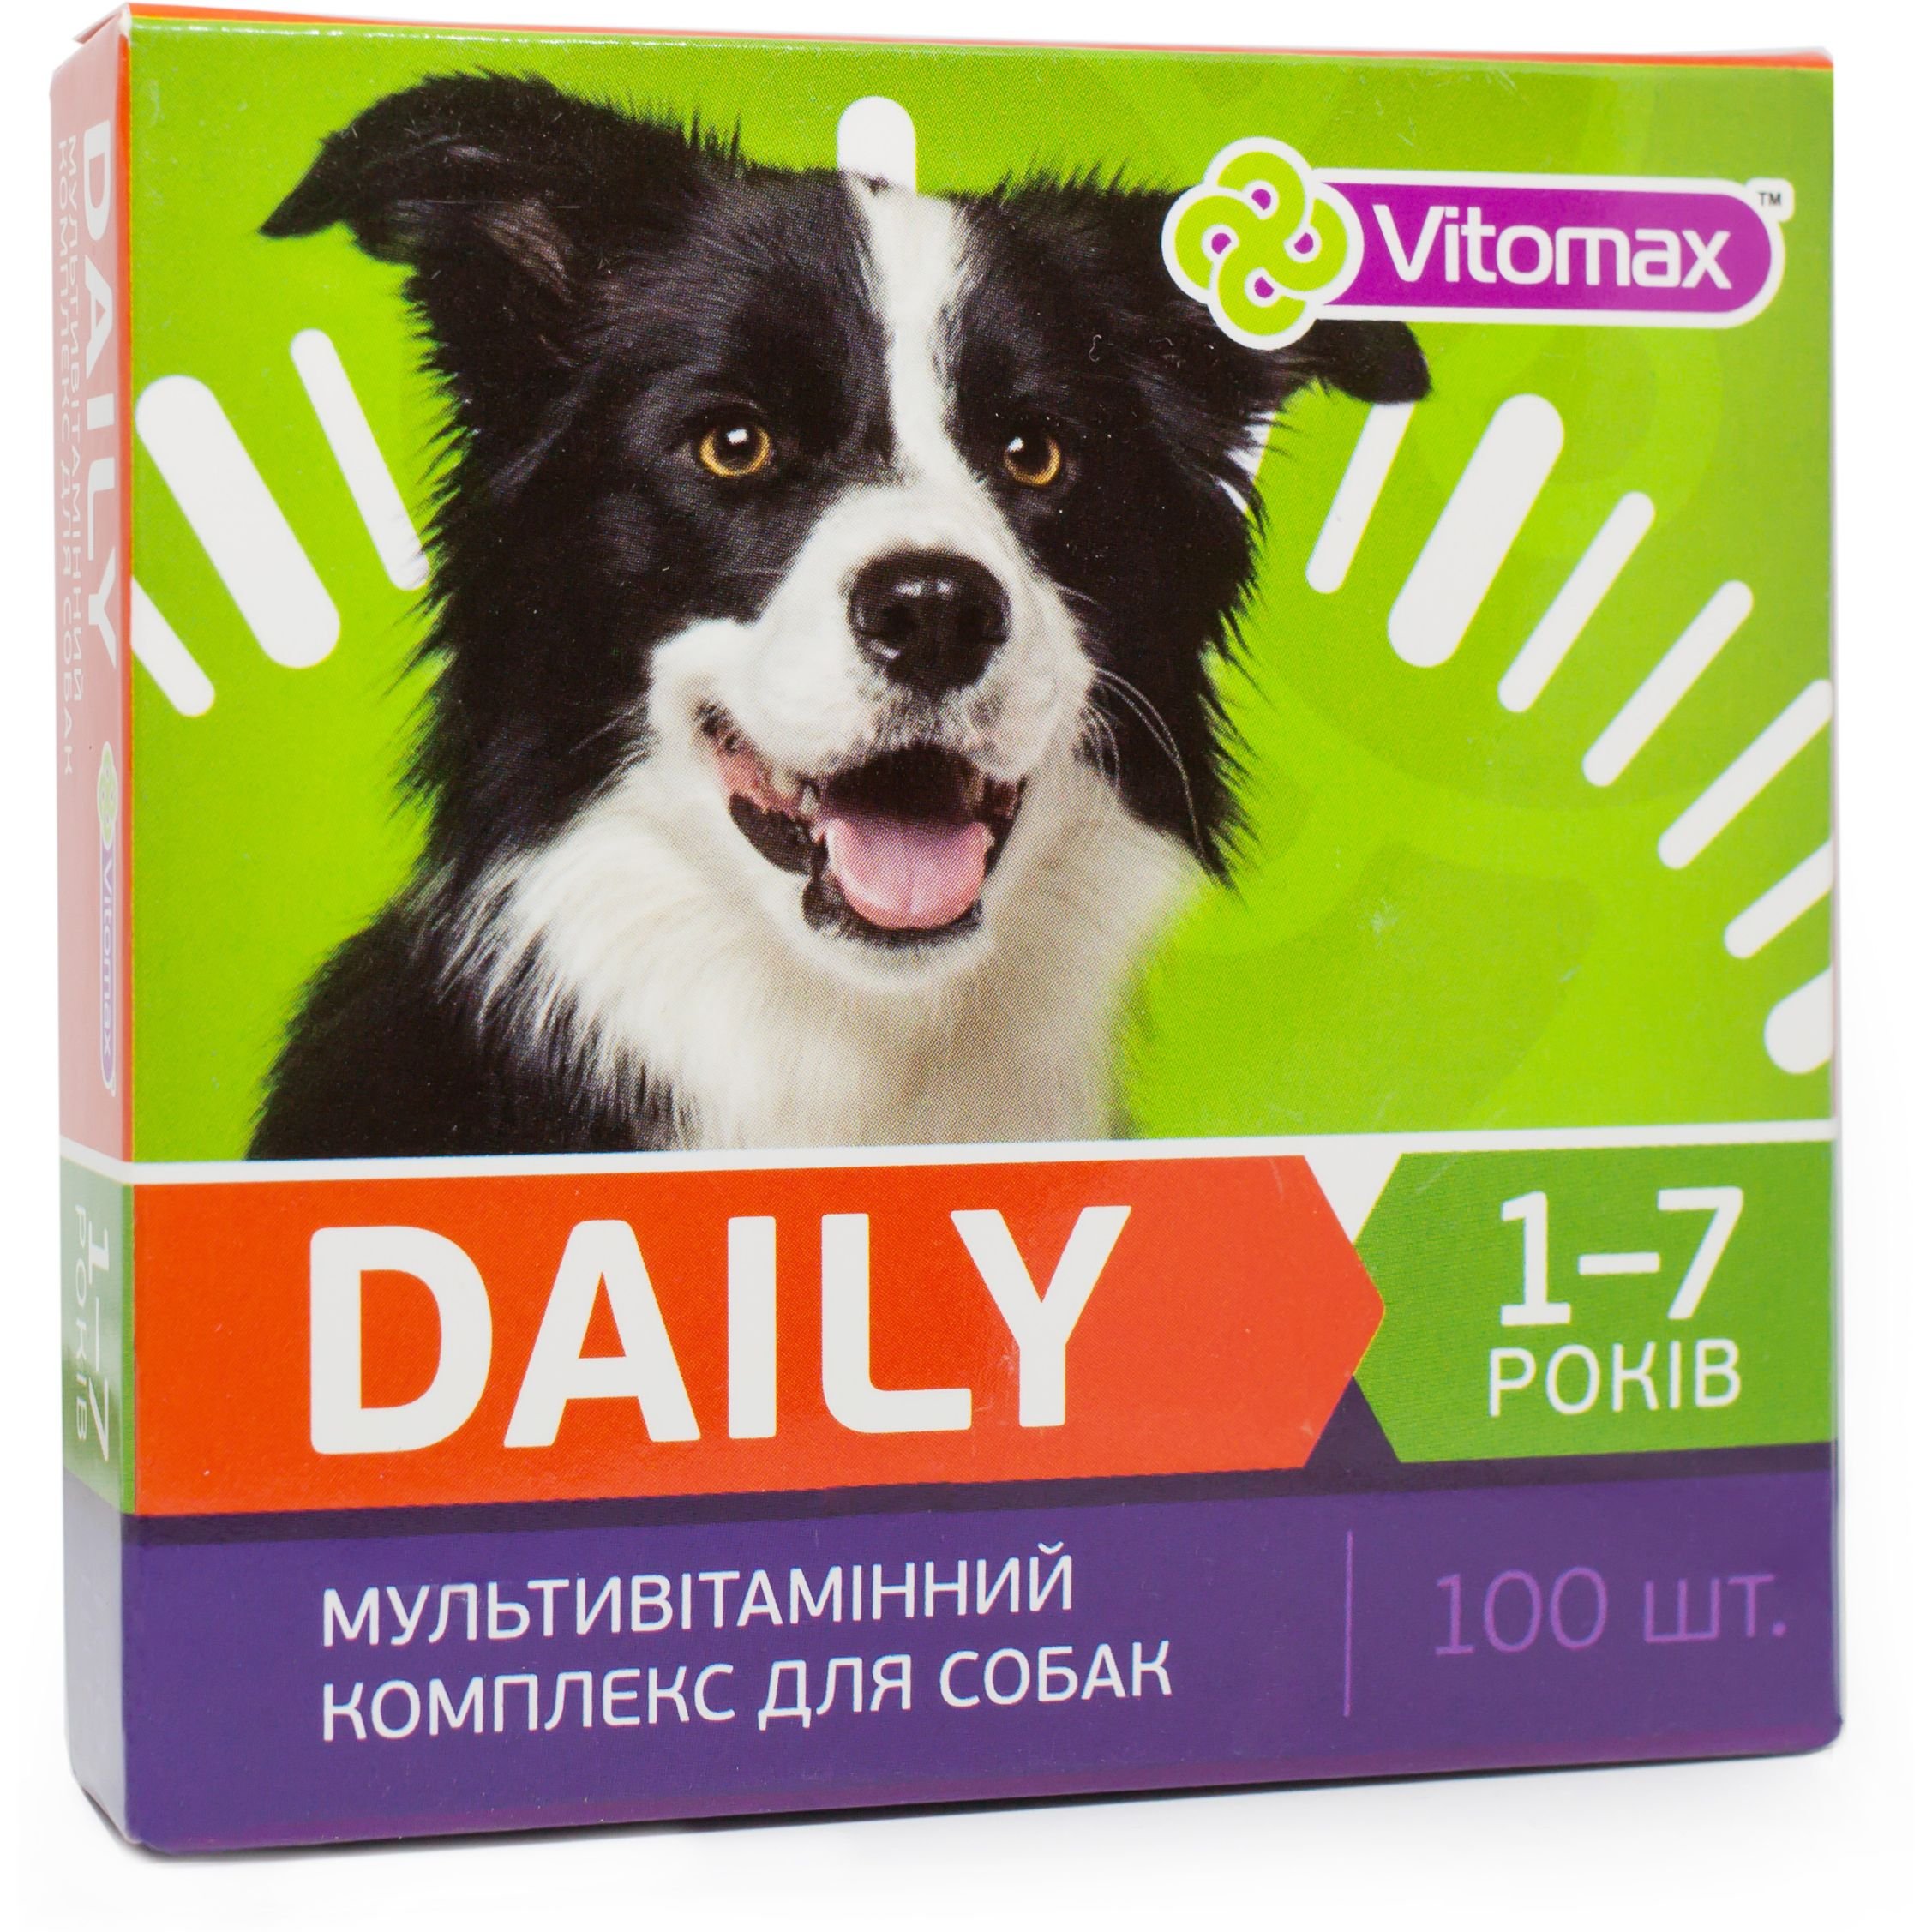 Мультивітамінний комплекс Vitomax Daily для собак 1-7 років, 100 таблеток - фото 1